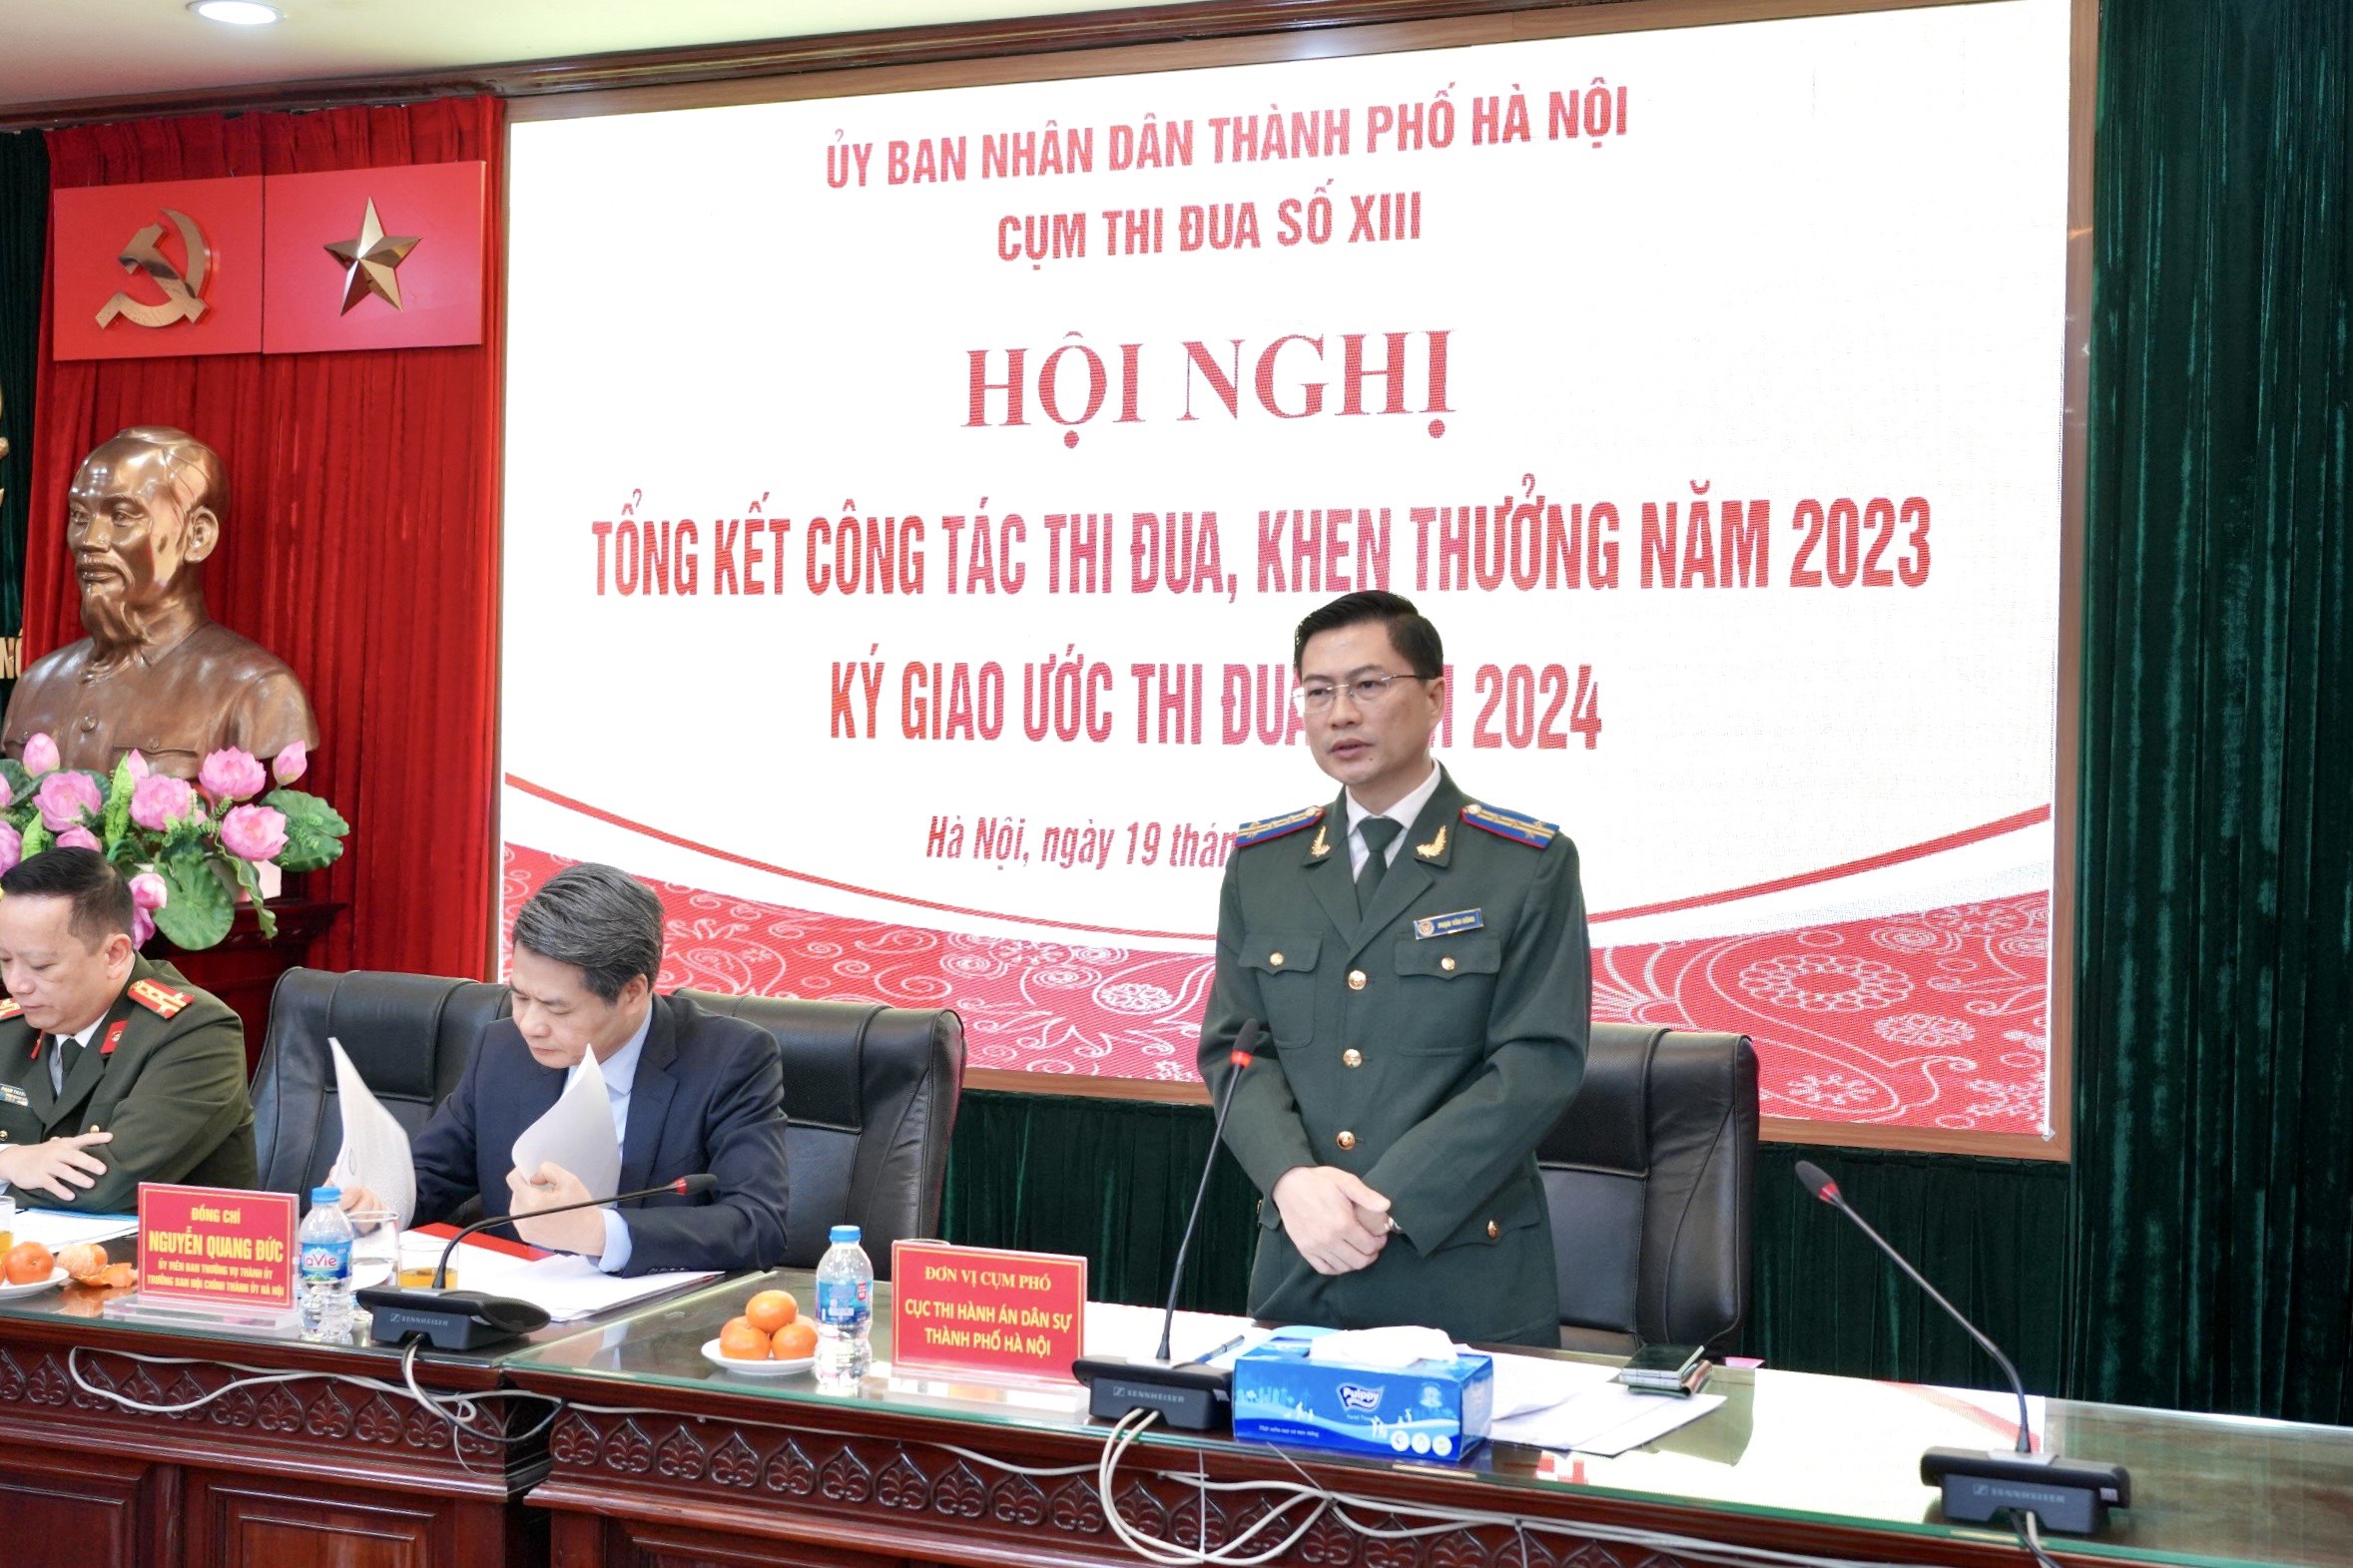 Sáng ngày 19/01/2024, thực hiện Kế hoạch số 377/KH-CTĐXIII ngày 04/12/2023, Cụm Thi đua số 13 thành phố Hà Nội tổ chức Hội nghị tổng kết công tác thi đua, khen thưởng năm 2023.